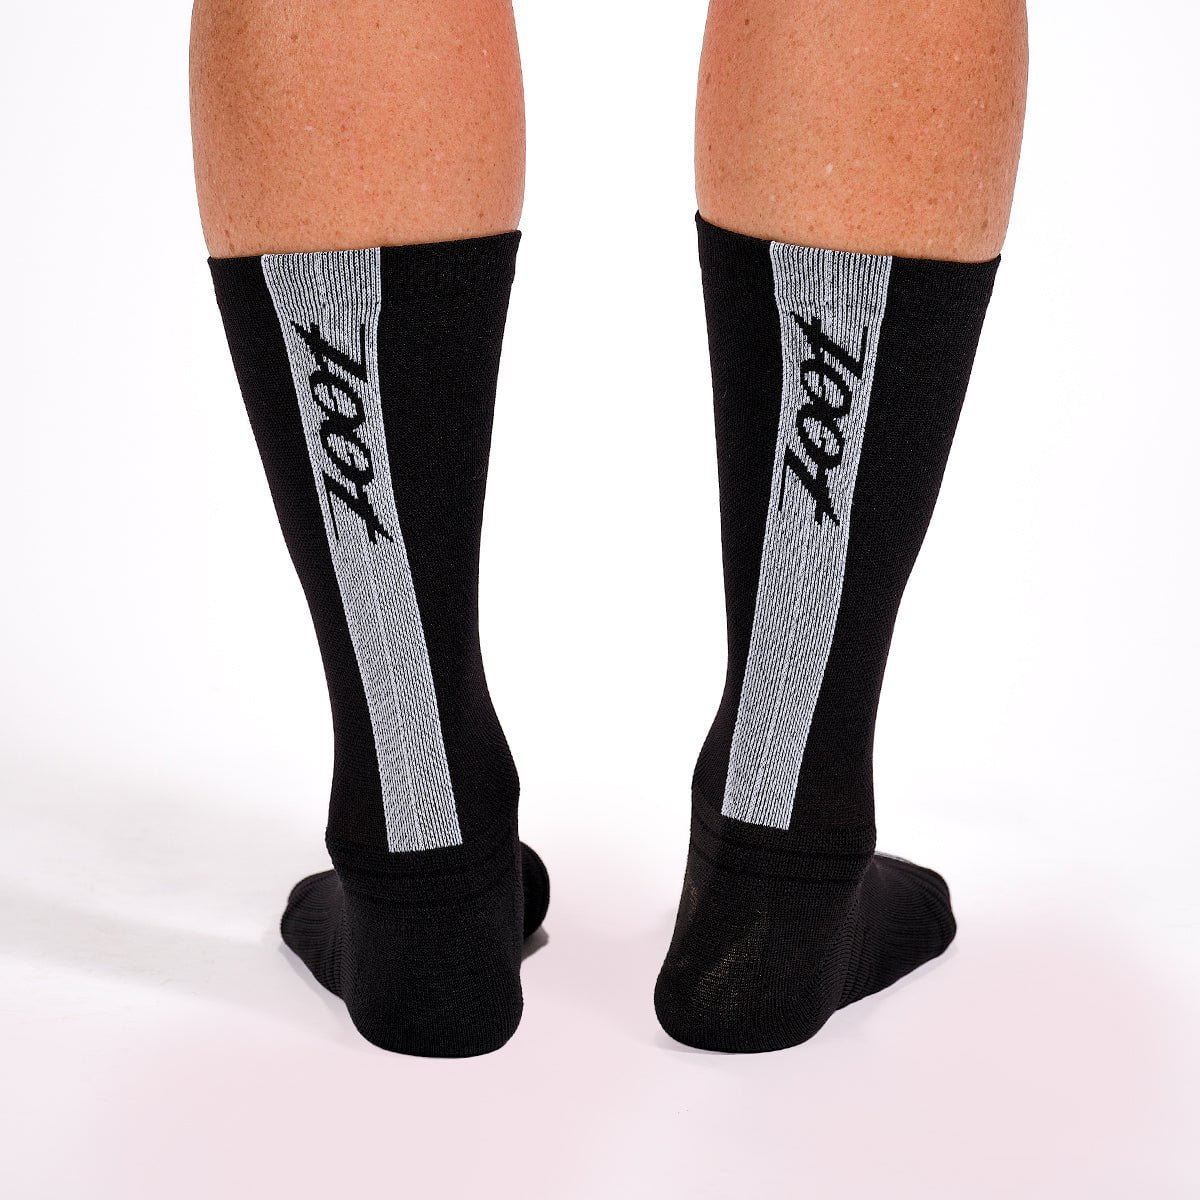 Zoot Sports SOCKS Unisex 6" Sock - Black/White